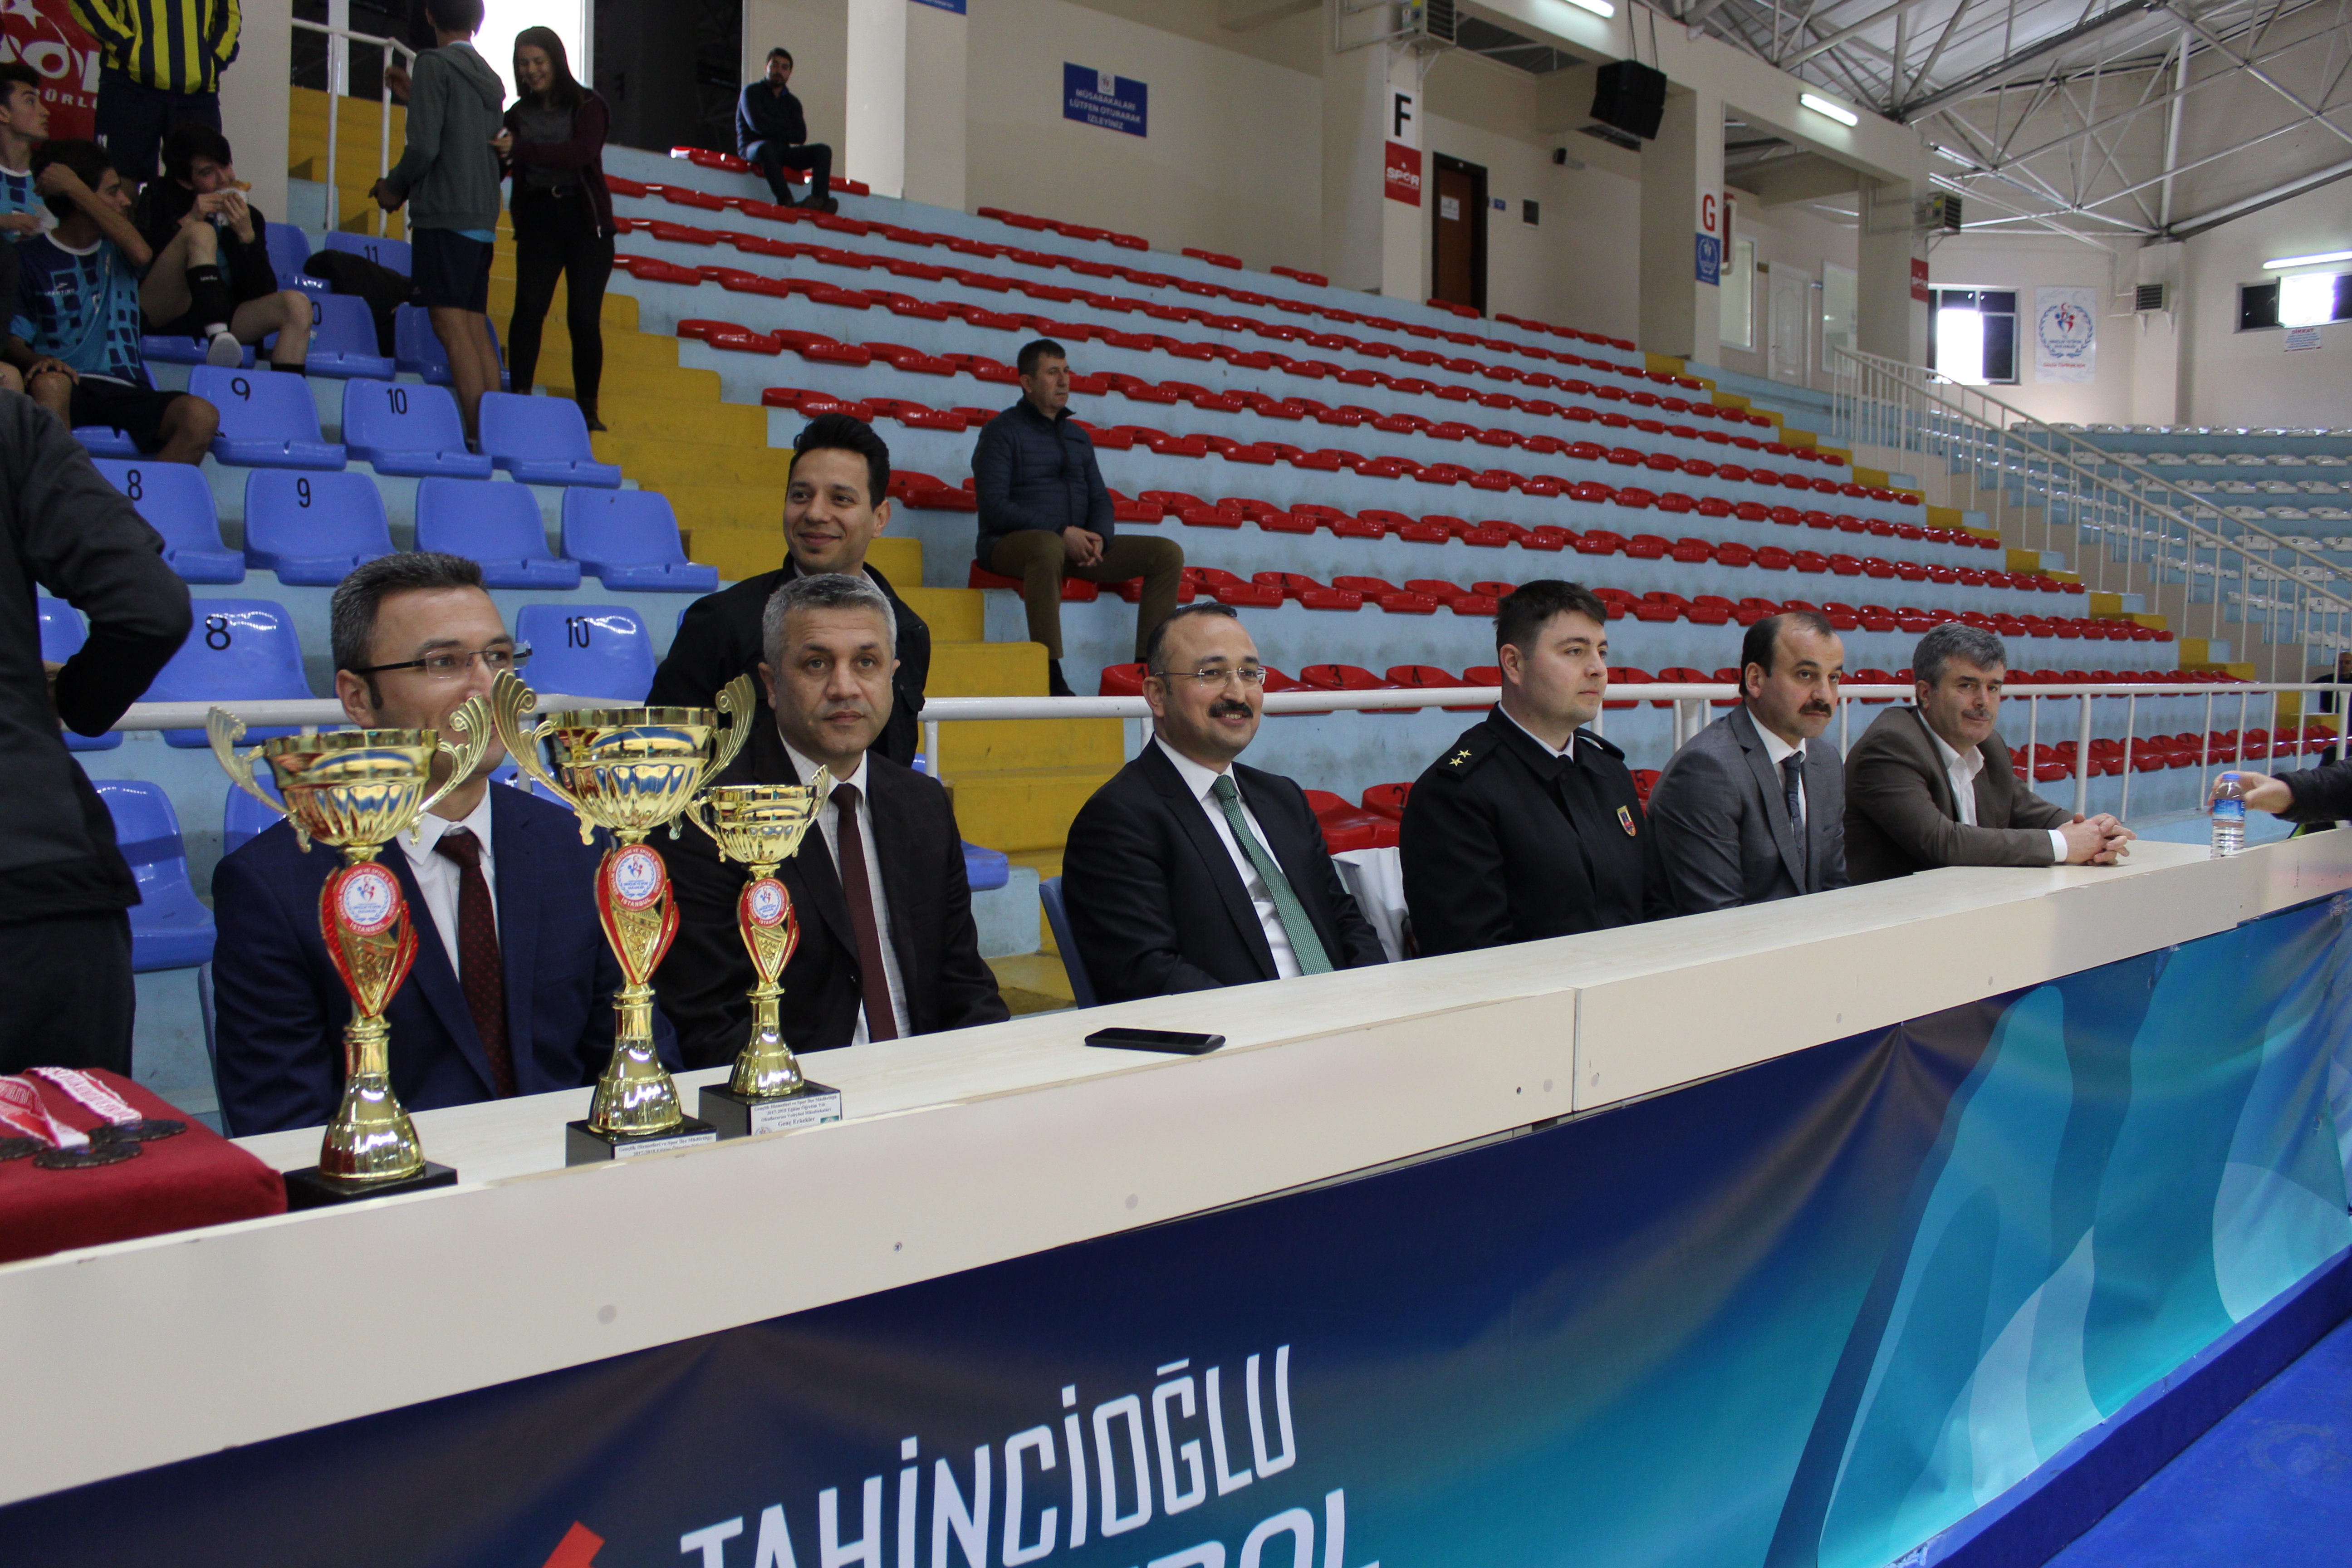 Büyükçekmece Kaymakamı Dr. Mehmet ÖZEL Liselerarası Geç Voleybol Turnuvasında Şampiyon Olan Takıma Madalya Ve Kupalarını Takdim Etti